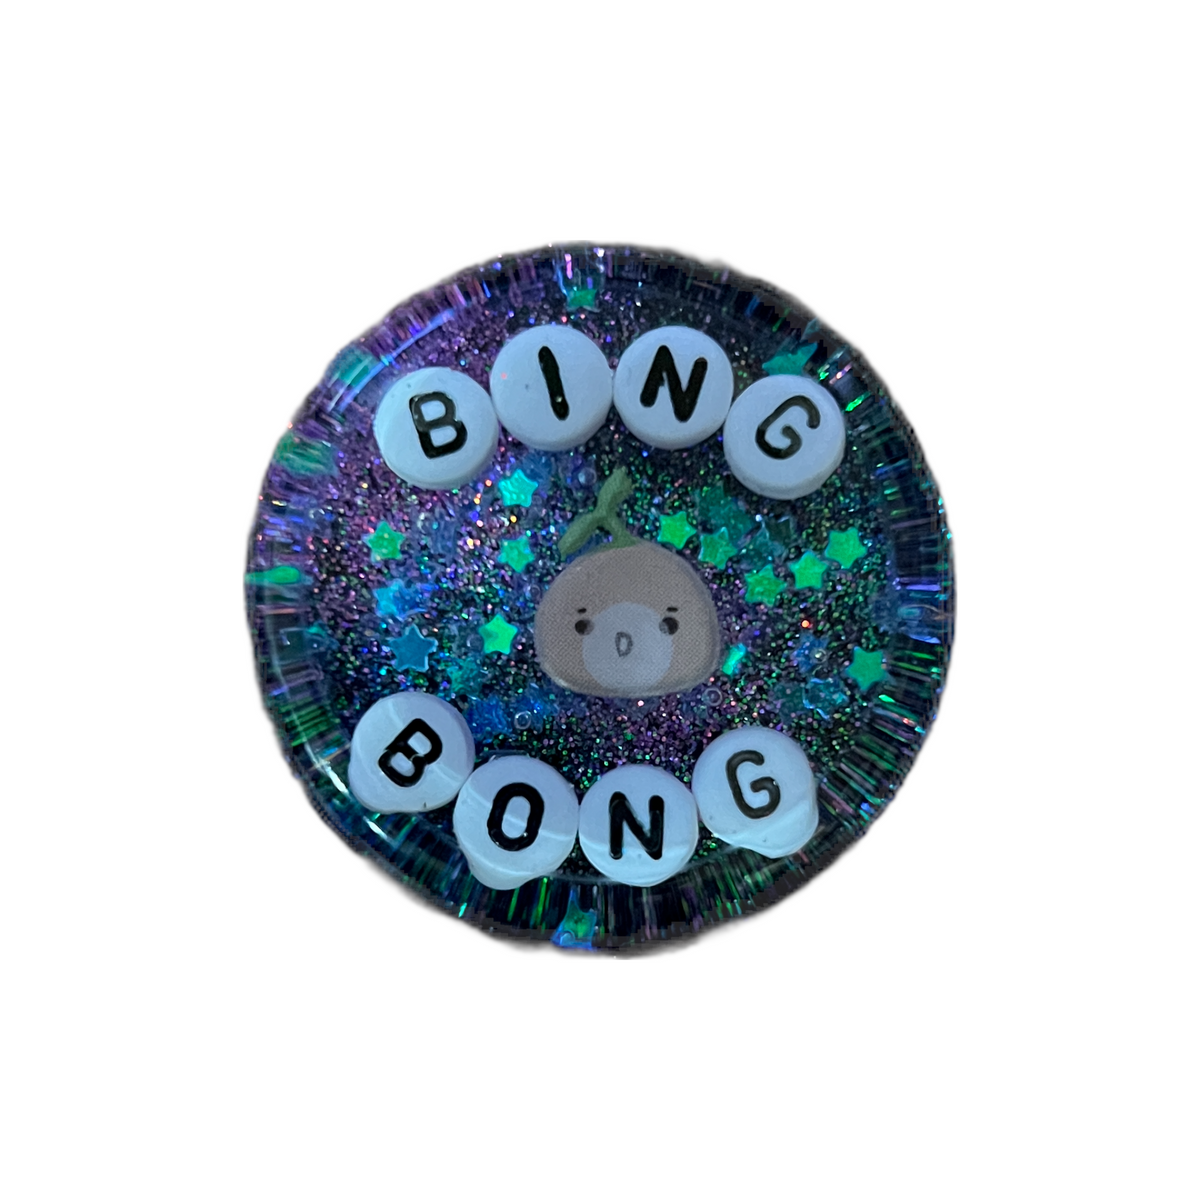 Bing Bong - Shower Art - READY TO SHIP